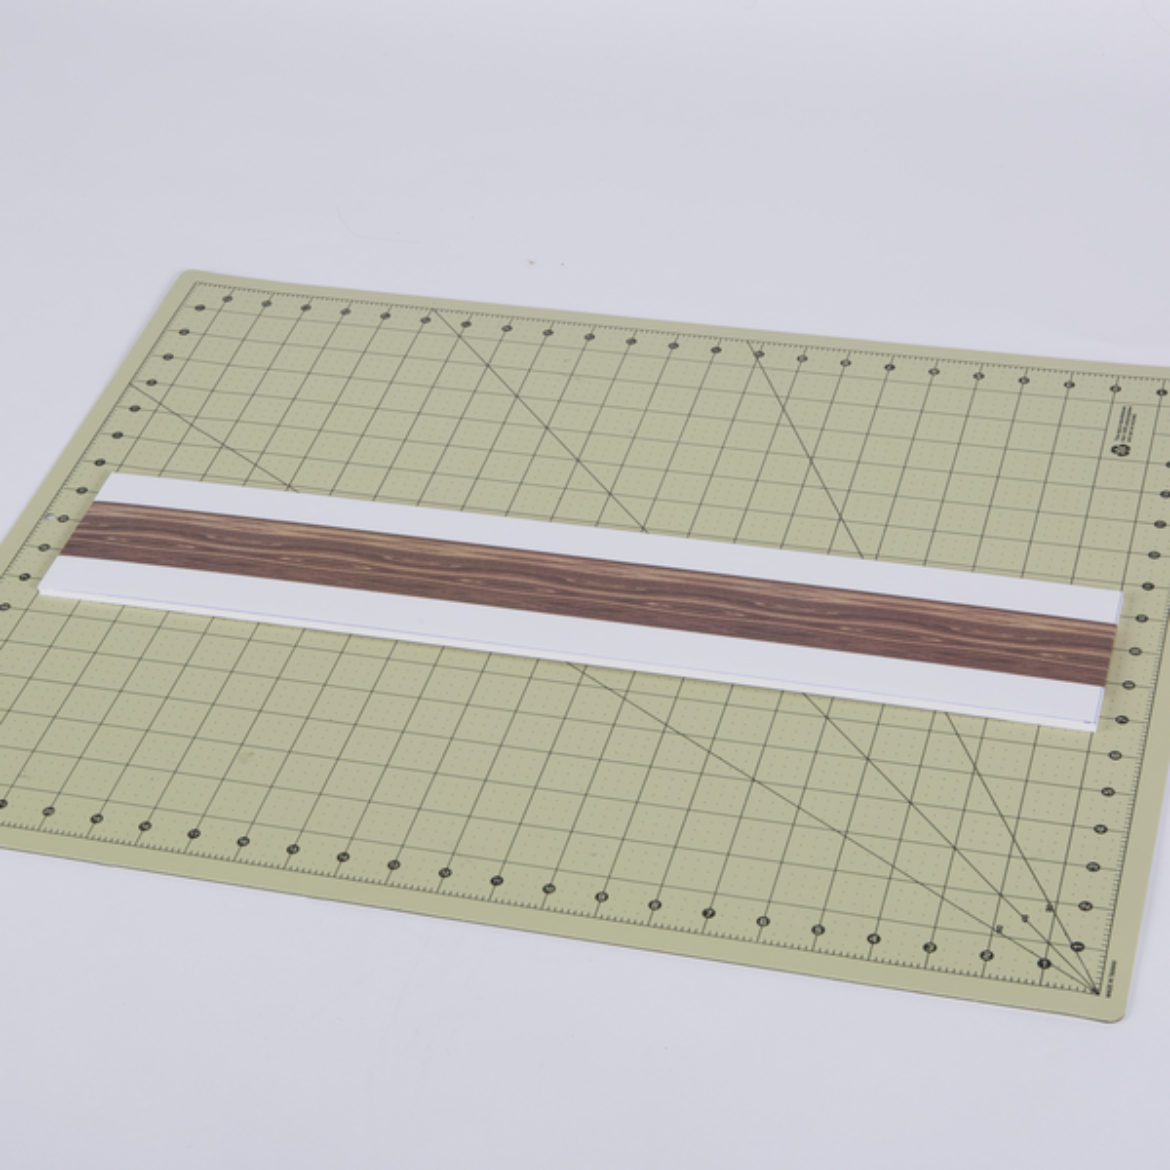 Foam core board covered in wood pattern Duck Tape